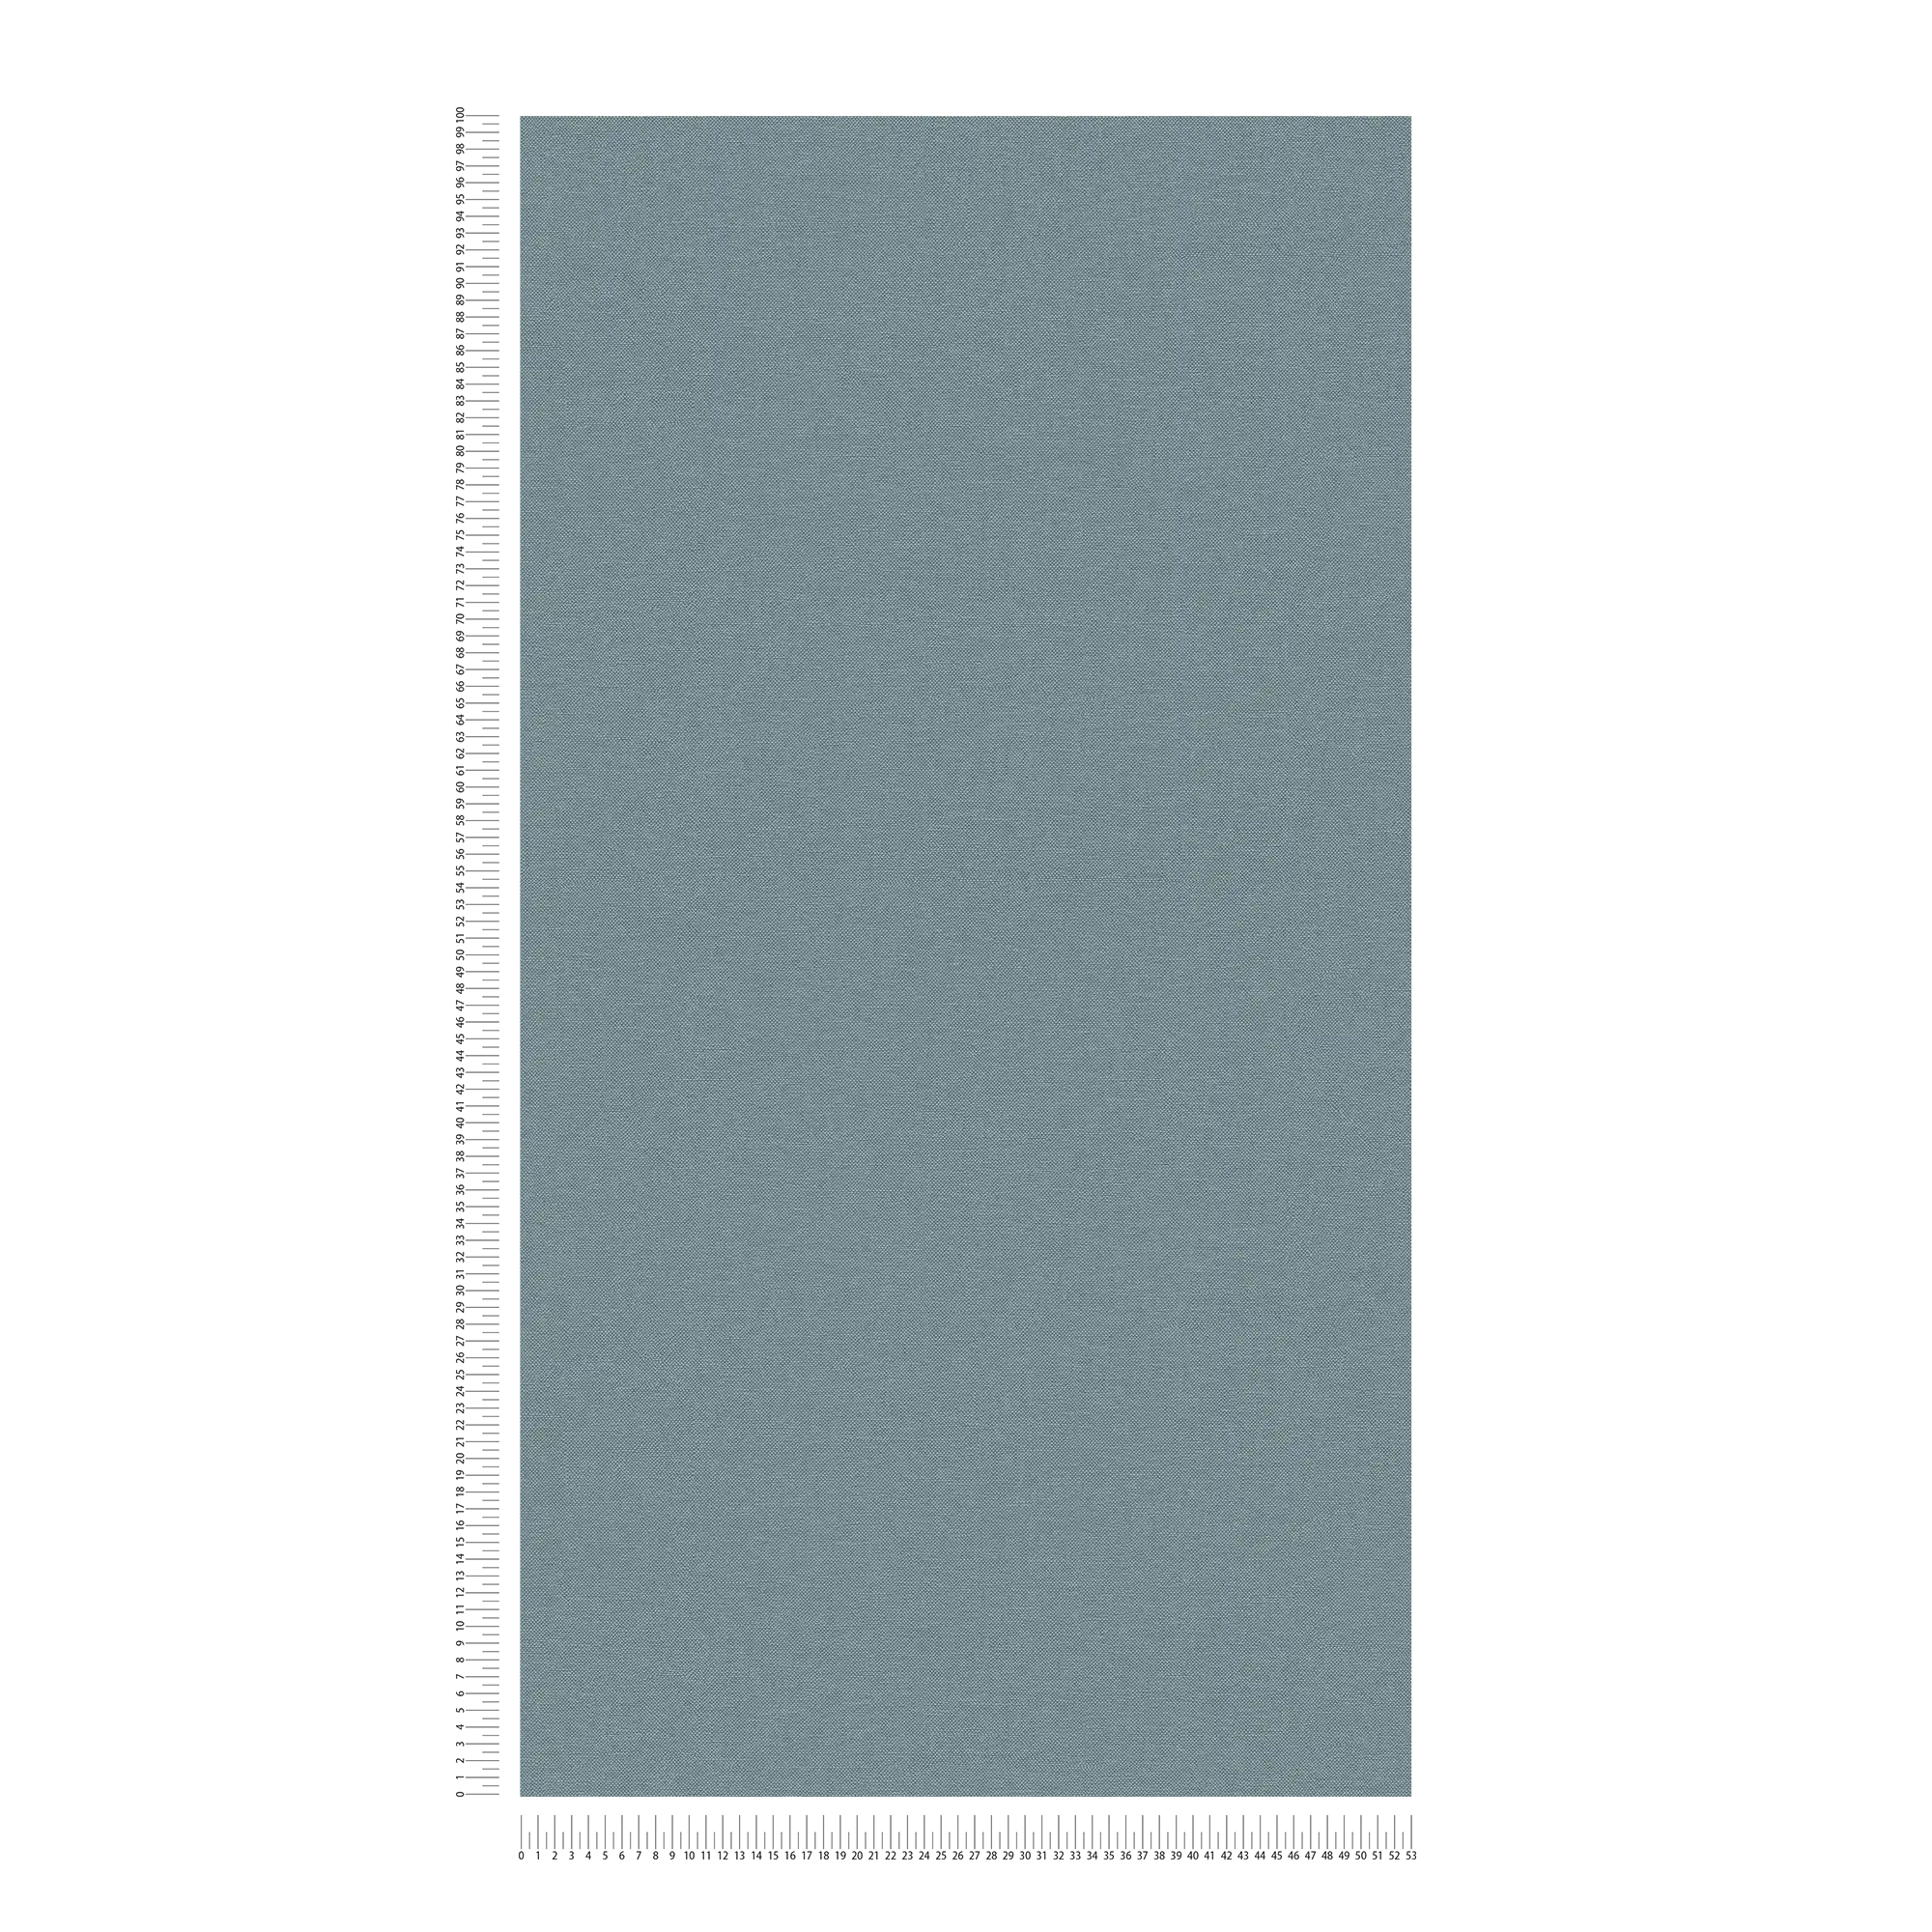             Plain wallpaper with fabric structure matt - blue
        